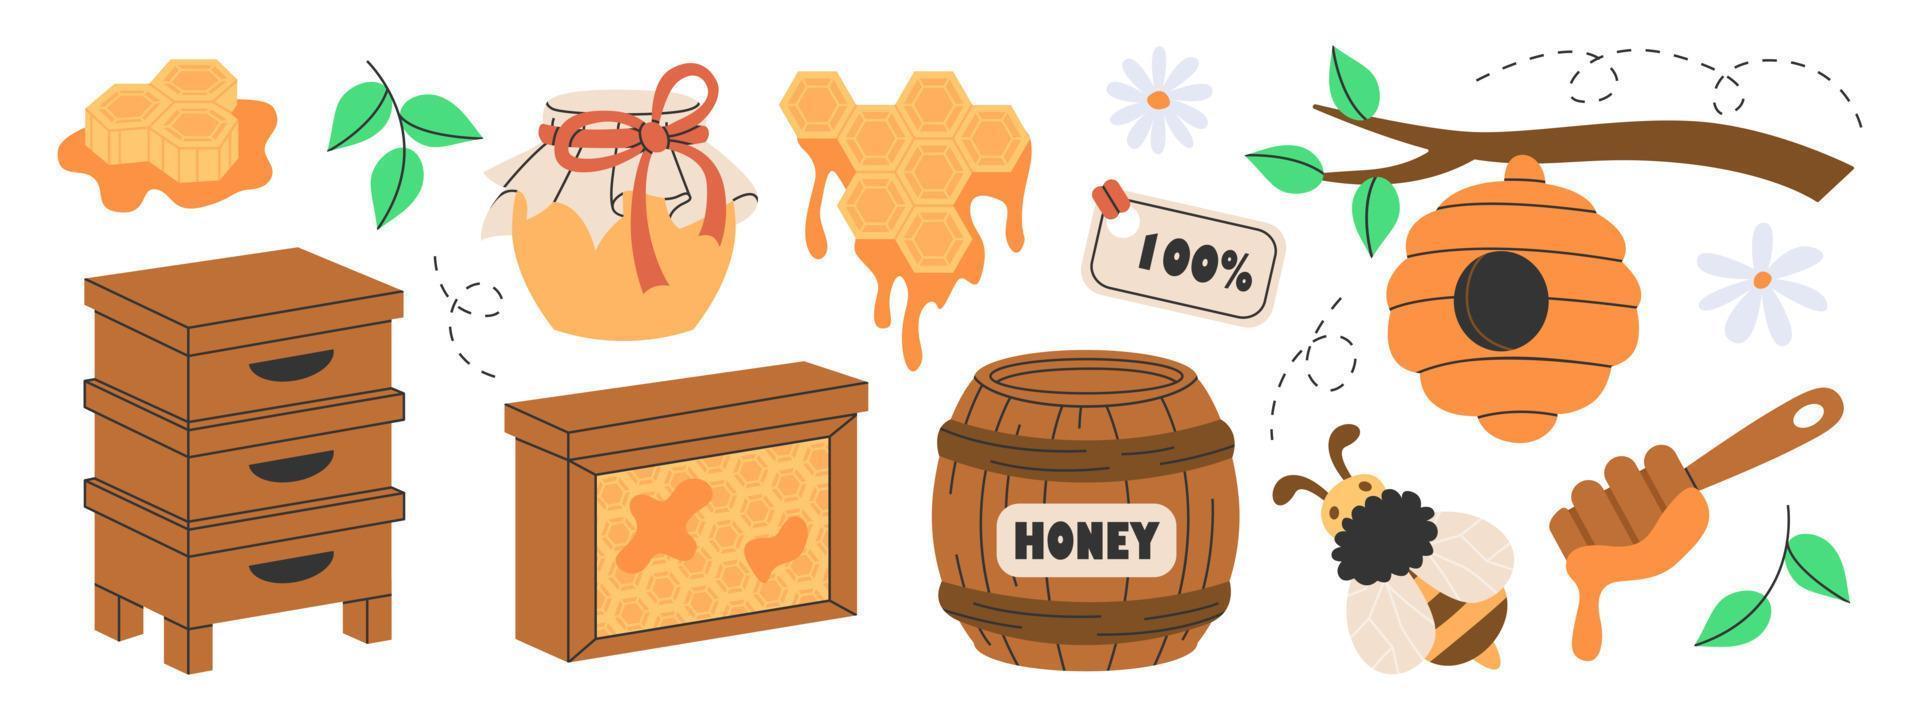 ensemble d'attributs de production de miel, d'apiculture ou d'apiculture. ruche en bois, nids d'abeilles hexagonaux, abeille, miel dans un bocal en verre, tonneau, fleurs, cuillère, ruche d'abeilles sur l'arbre. bonbons naturels bio du rucher. vecteur